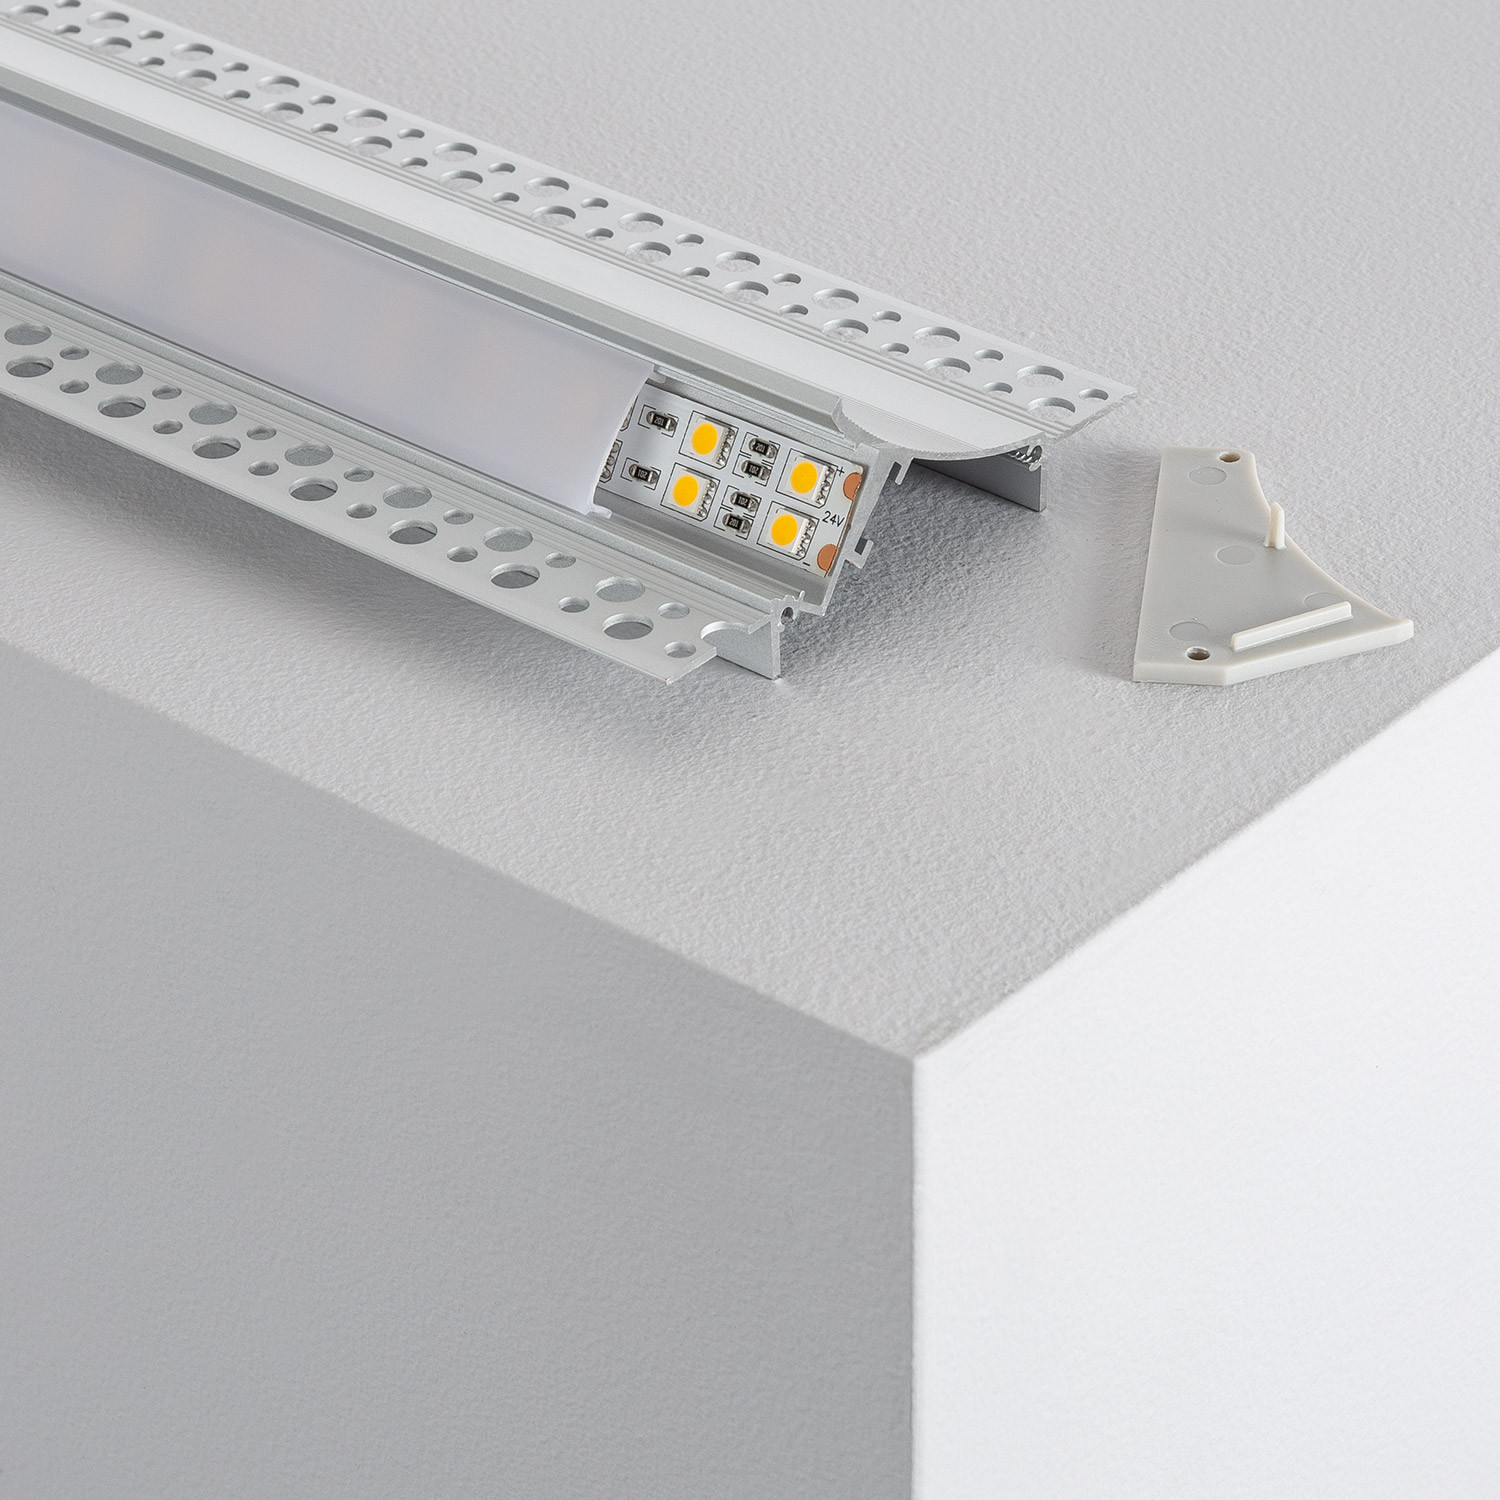 stilte Bedankt Overleven Inbouw aluminium profiel voor gips / gipsplaten met doorlopende cover voor LED  Strip tot 20mm - Ledkia